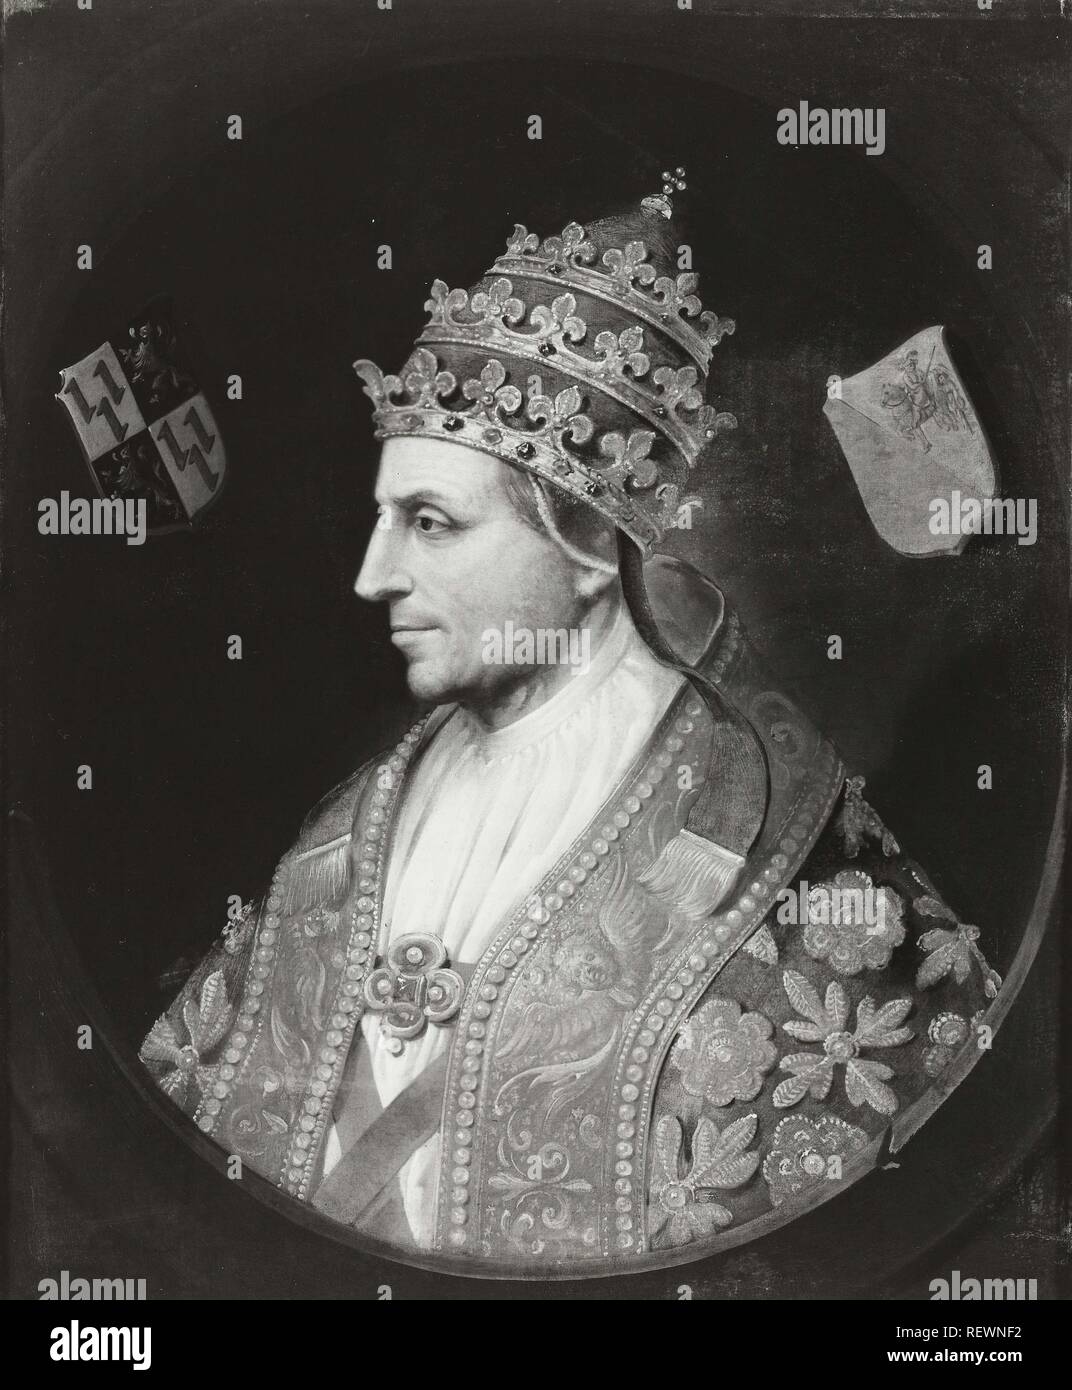 Le pape Adrien VI. Dating : après c. 1520 - 1599. Lieu : Noord-Nederland. Mesures : support : h 78,5 cm × w 65 cm. Musée : Rijksmuseum, Amsterdam. Banque D'Images